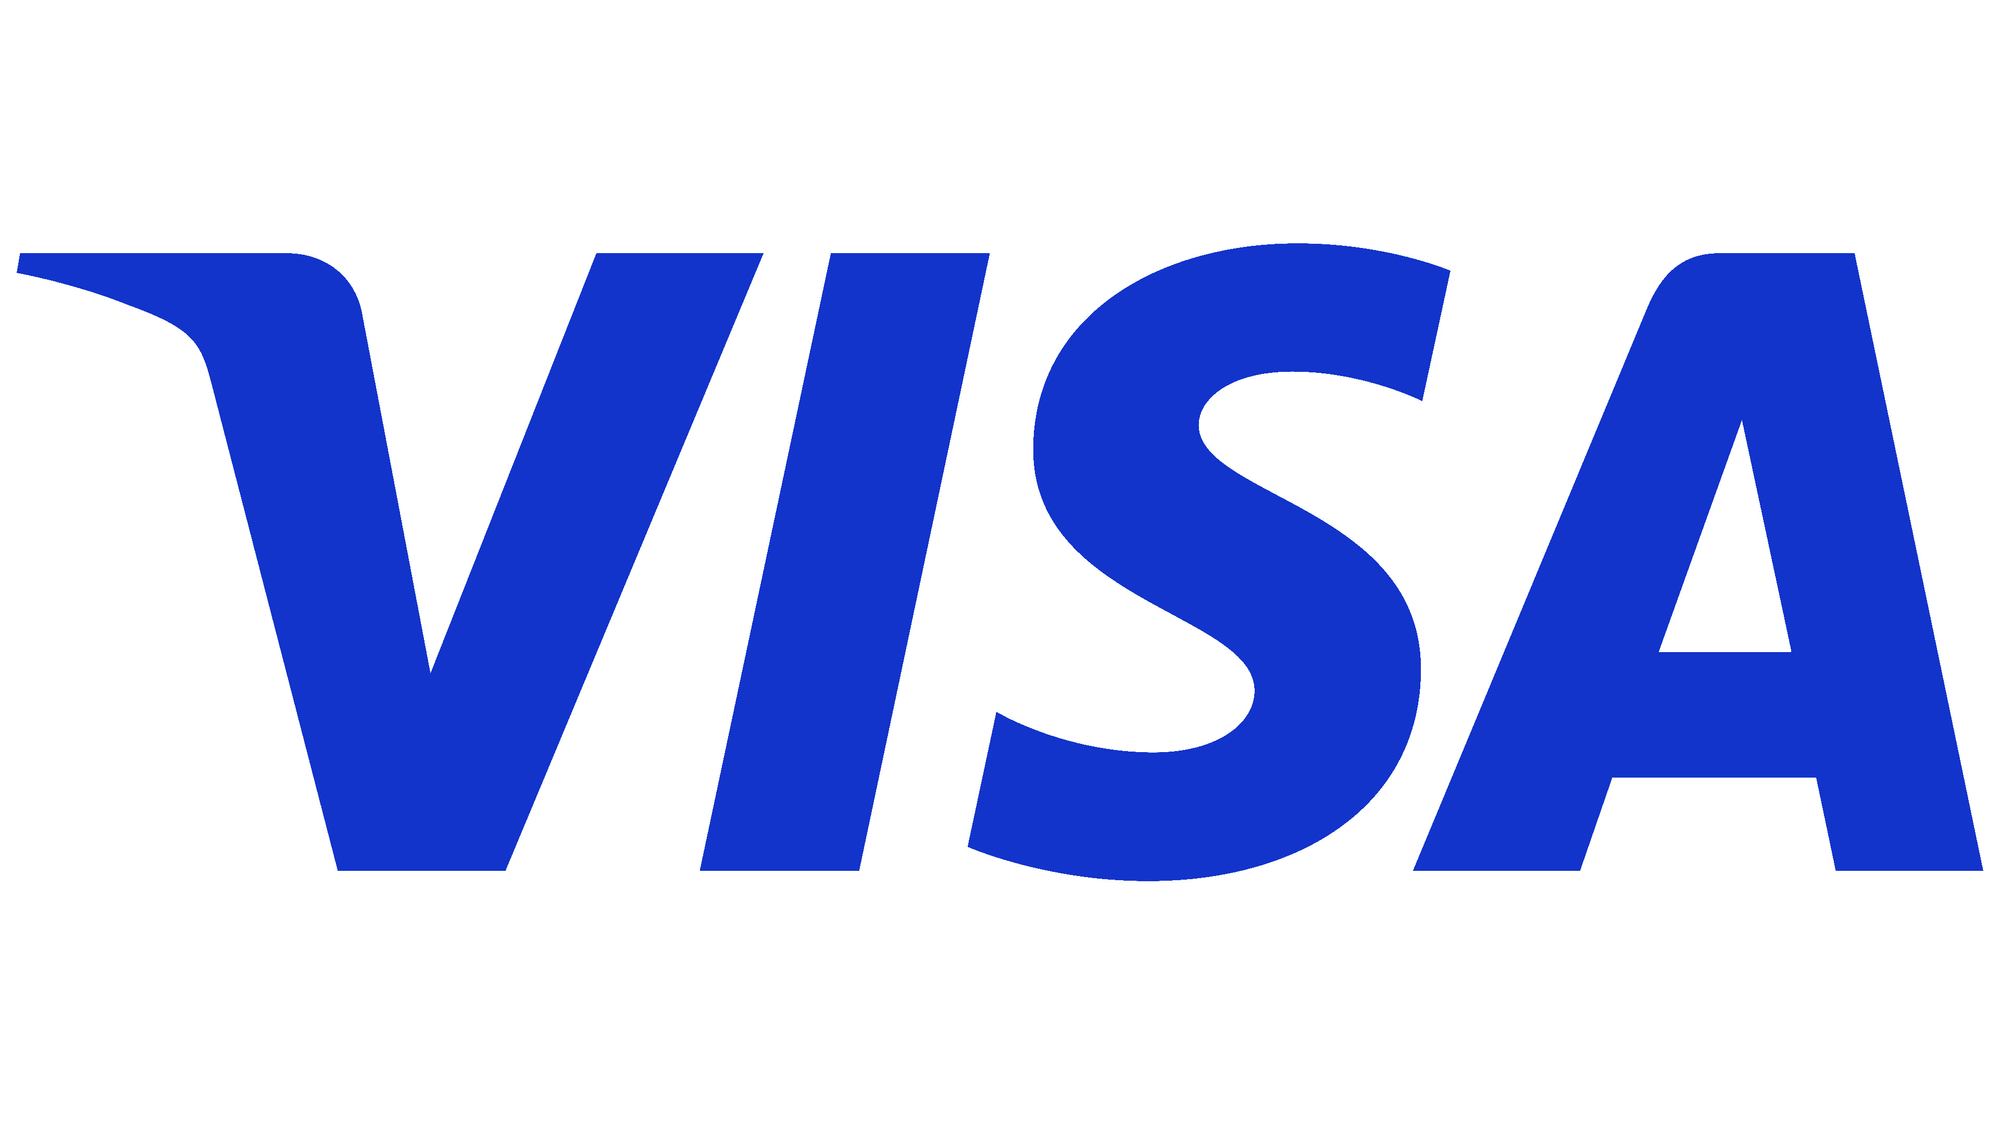 В КР открыт прием заявок на участие в конкурсе финтех-стартапов от Visa